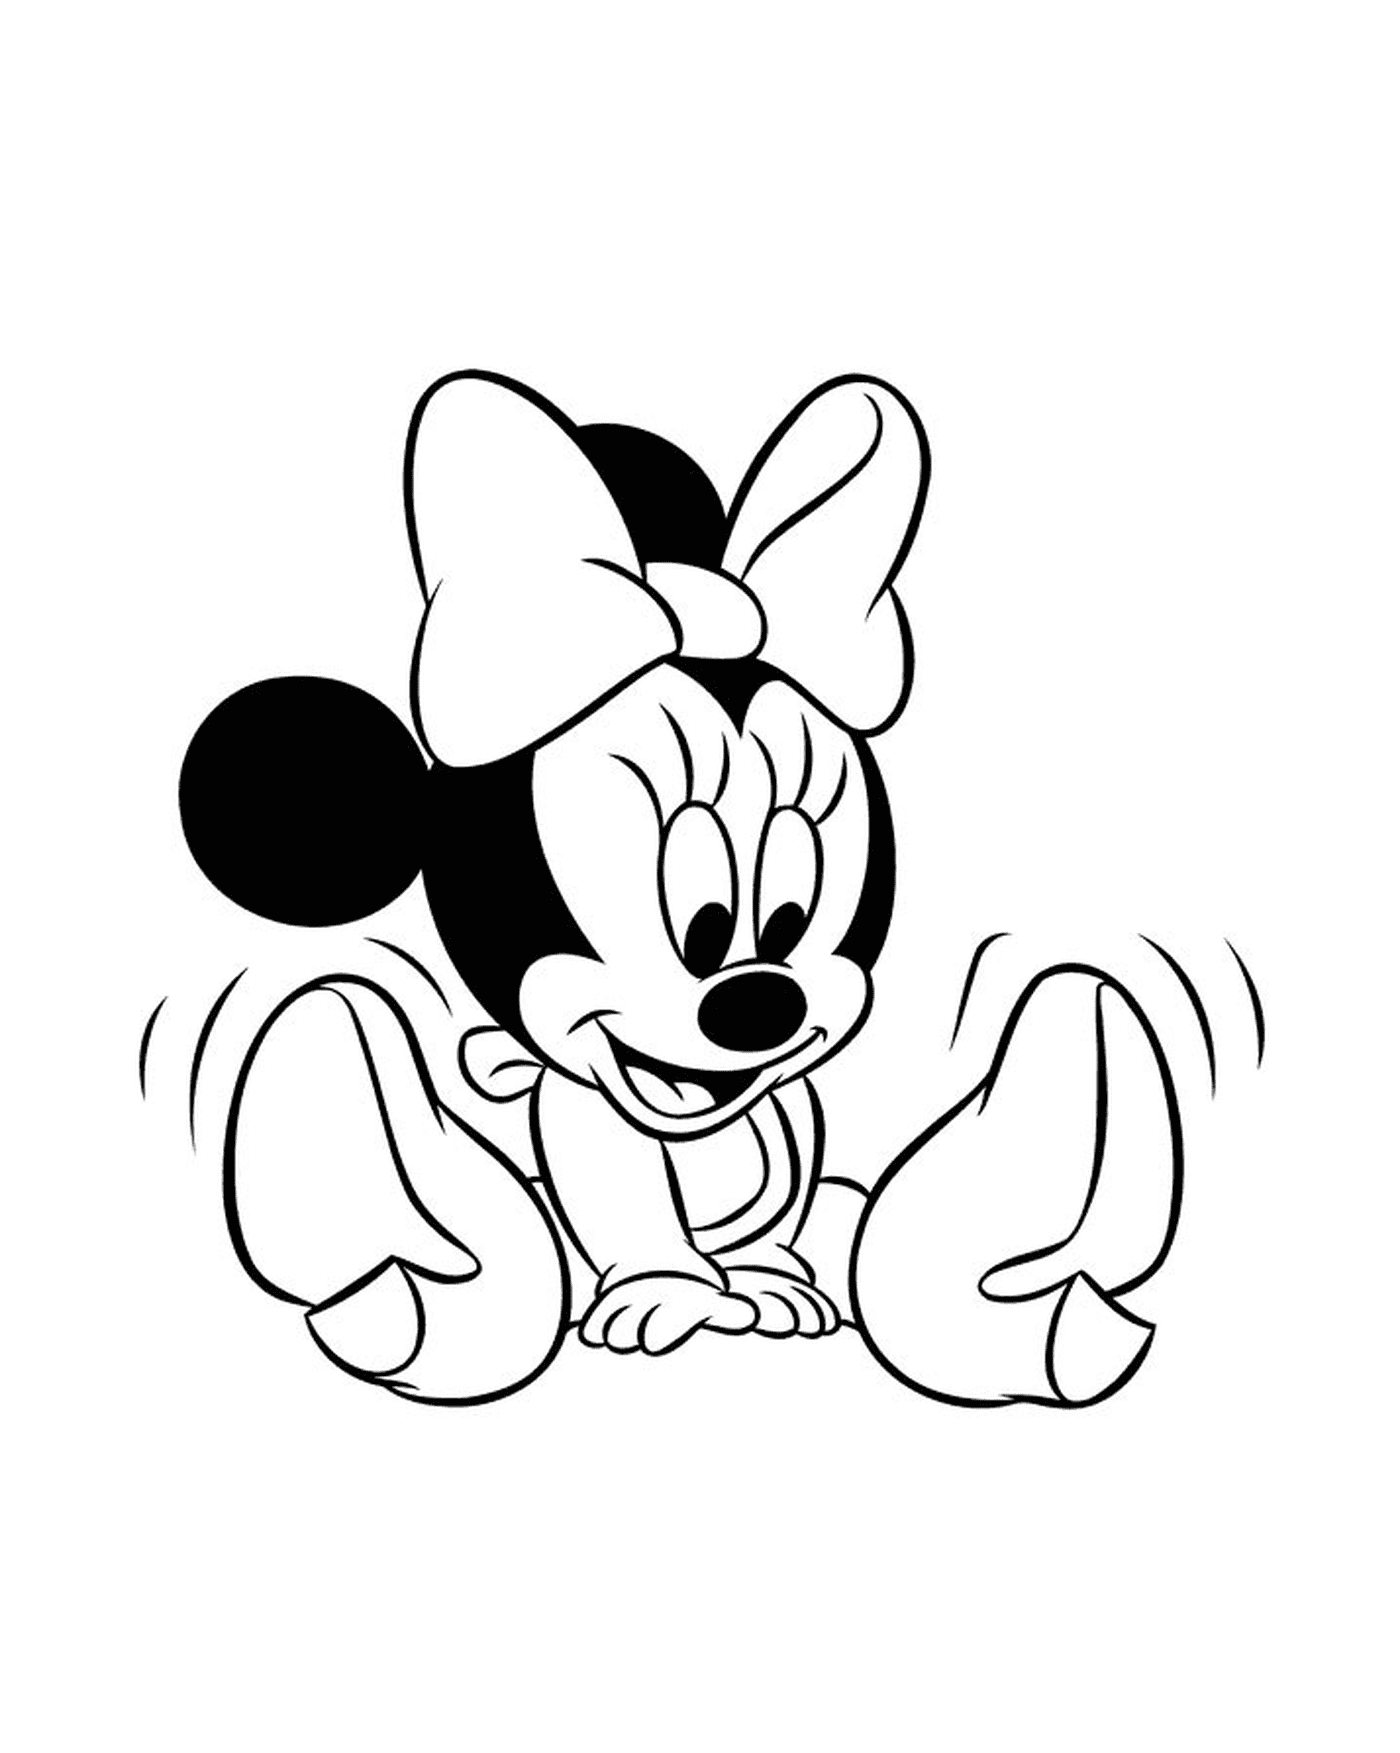   Minnie Mouse bébé assise par terre, les jambes croisées 